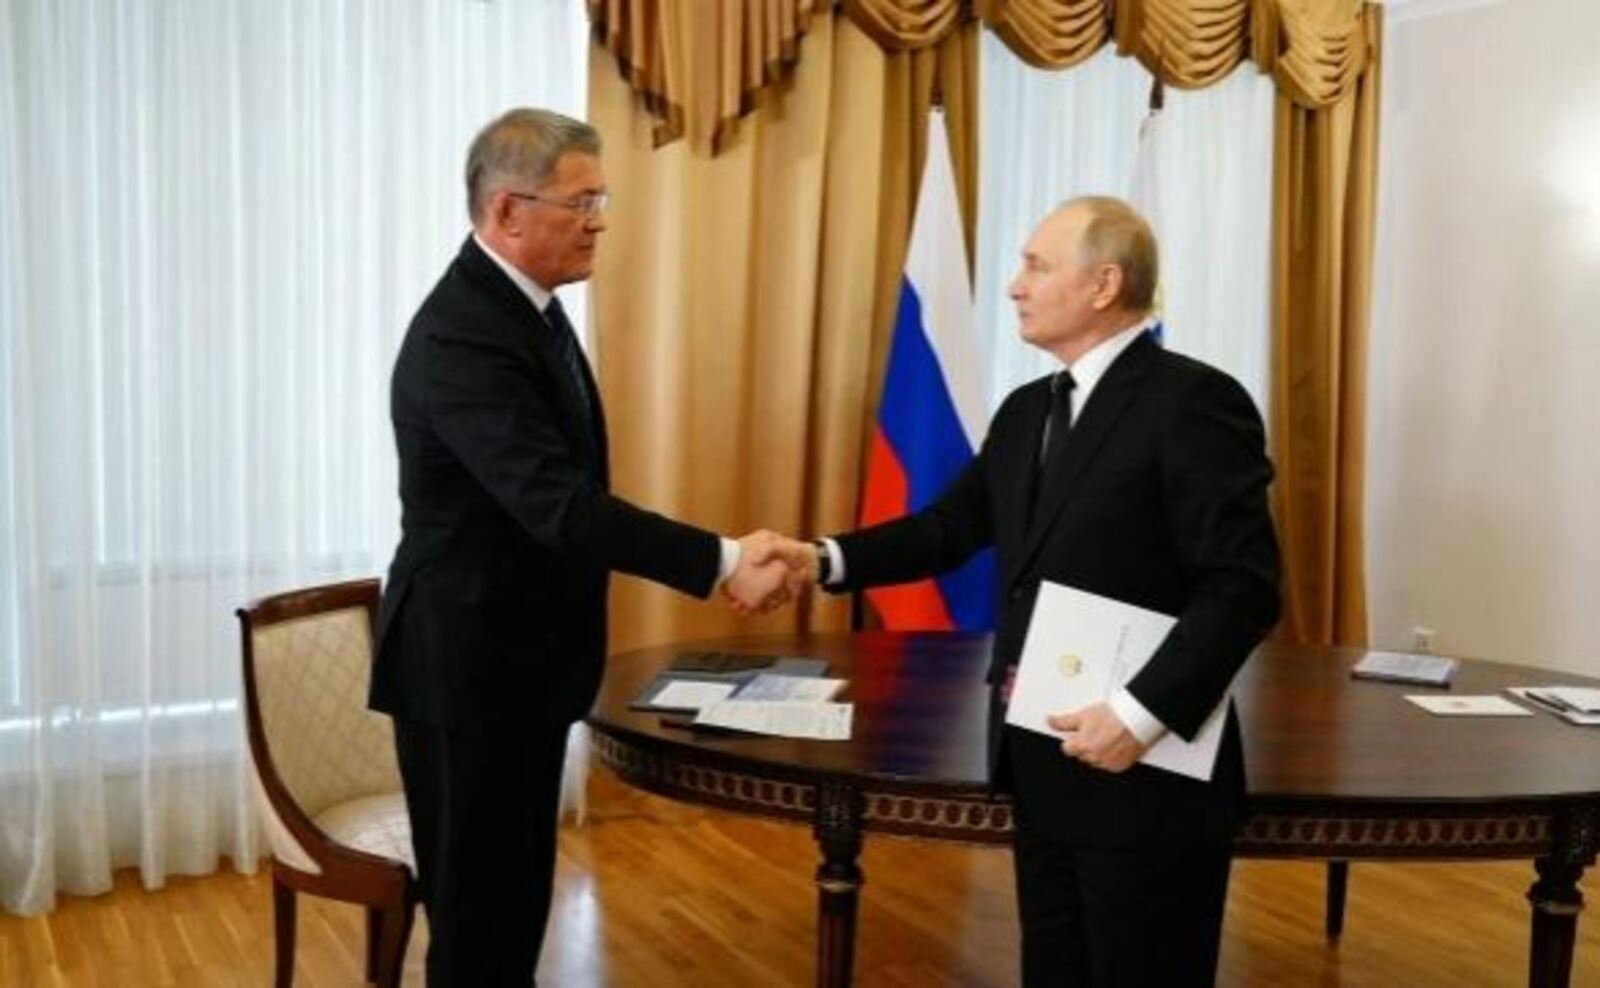 Политологи оценили визит Путина в Башкортостан